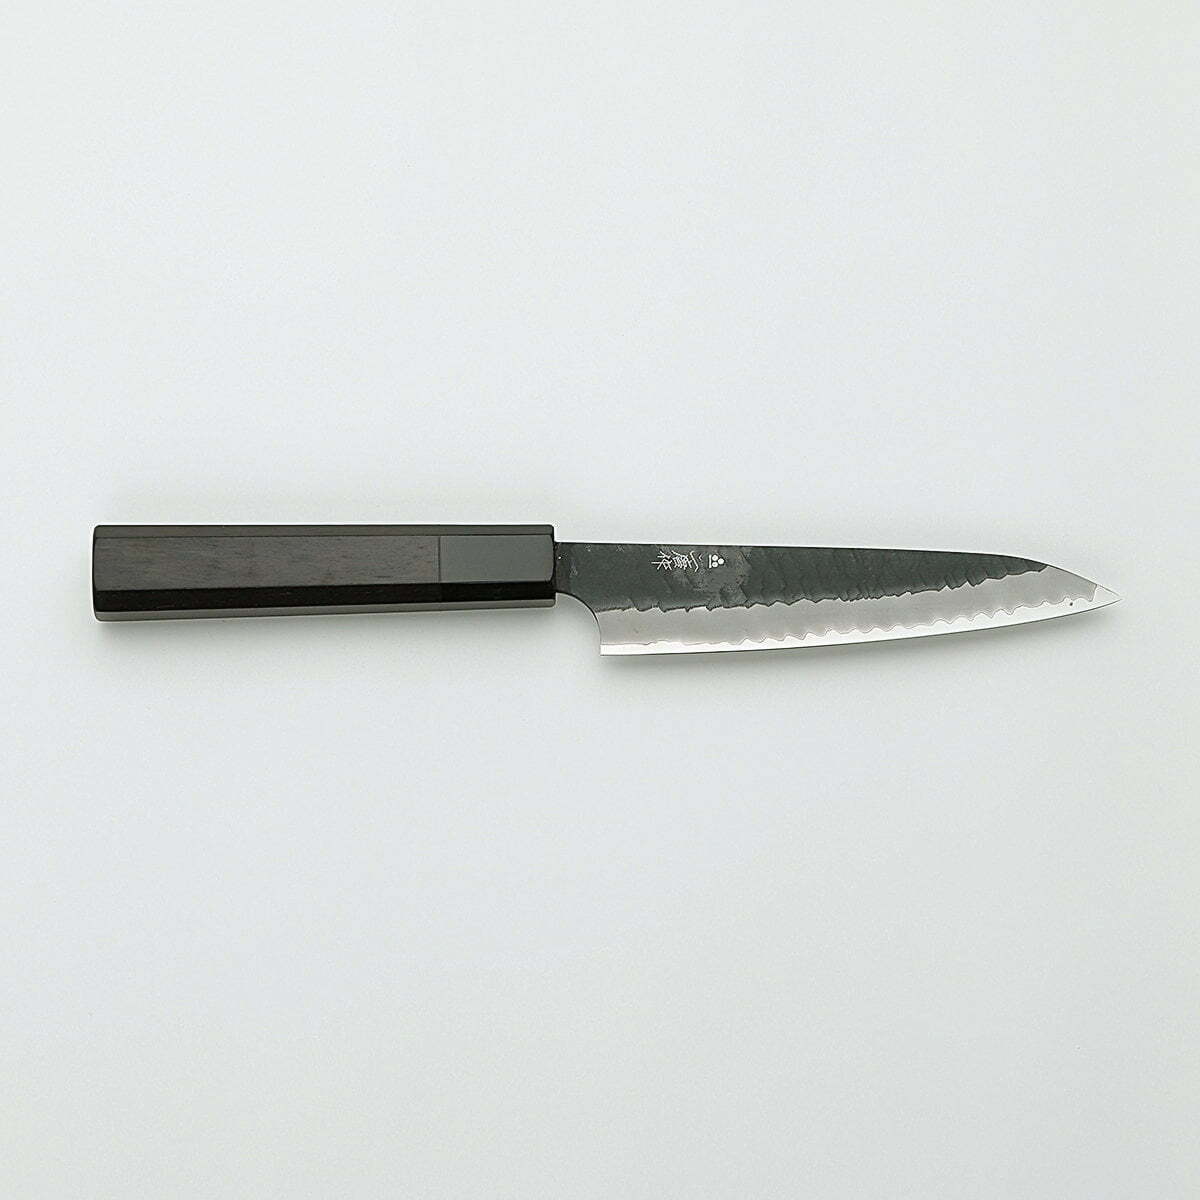 סכין עזר קטנה רב-תכליתית פֶּטִי 150מ״מ מחושלת בעבודת יד 3 שכבות: פלדת פחמן יפנית מתקדמת מסוג R2/SG2 עטופה פלדת אל-חלד גימור קורואיצ׳י שחור עם ריקוע פטיש ניגארה יפן